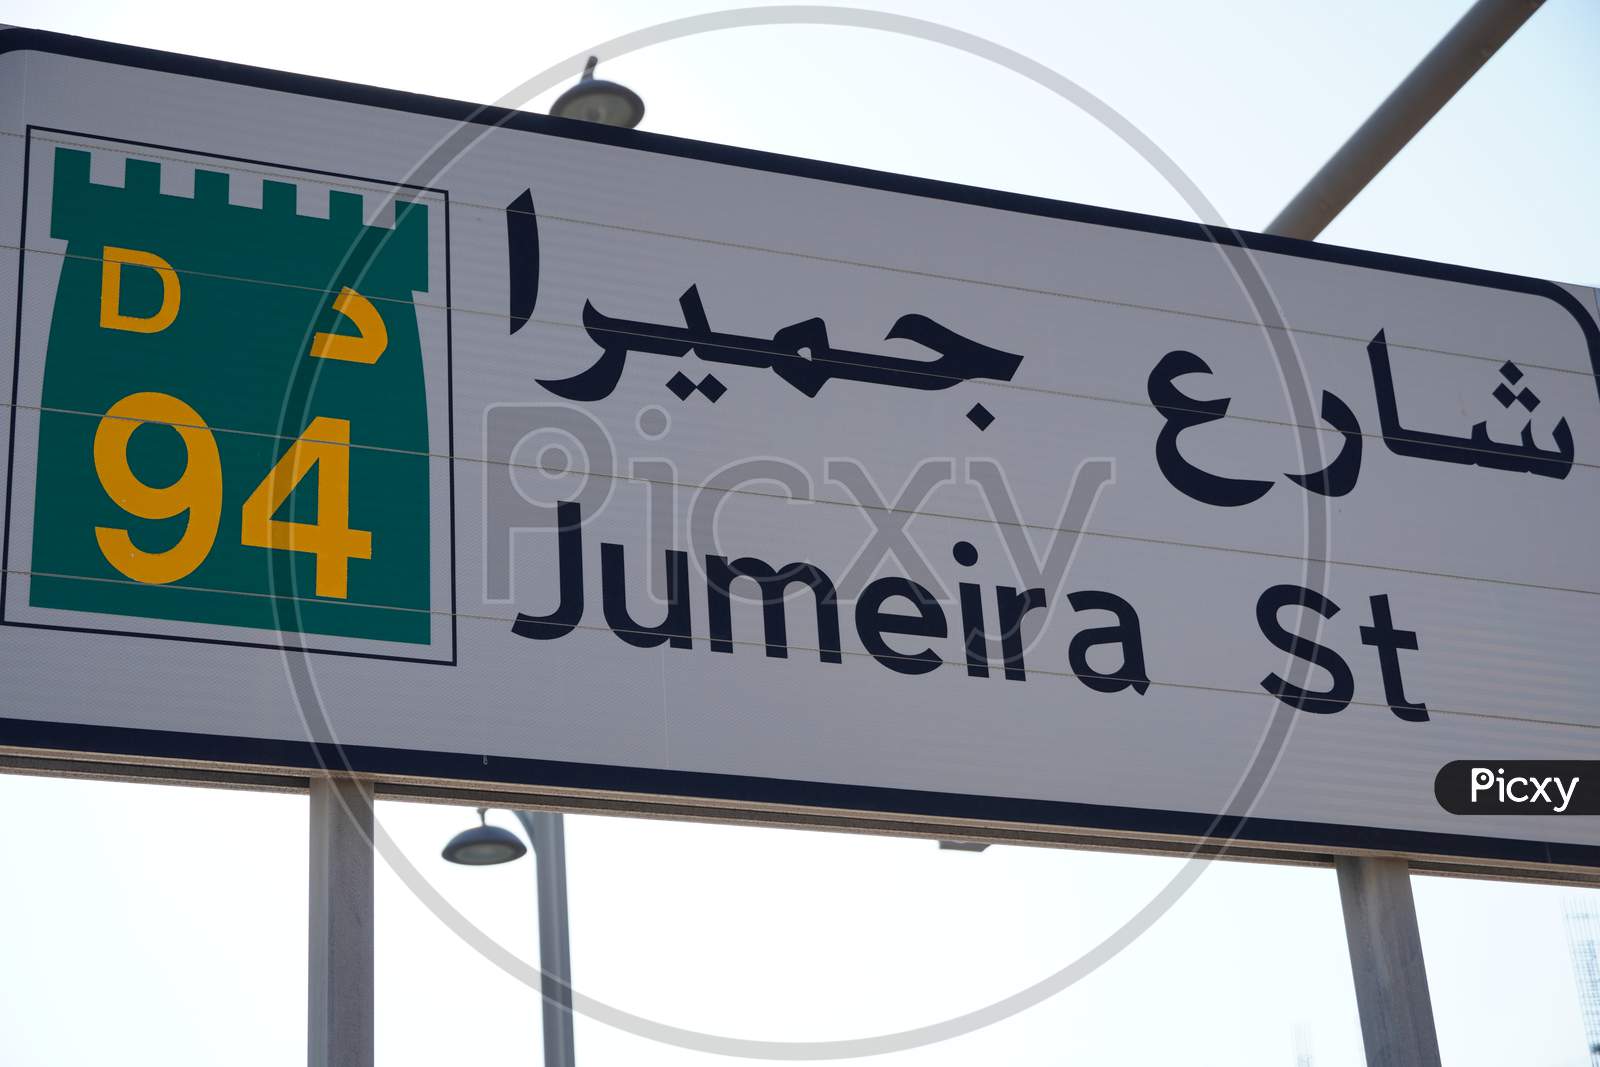 Dubai Uae: Jumeira Street Sign In Dubai, Jumeirah Is One Of Most Famous Area In Dubai, Dubai Lifestyle. Road D94 Jumeirah St In Dubai Uae. One Of The Main Roads In Dubai.